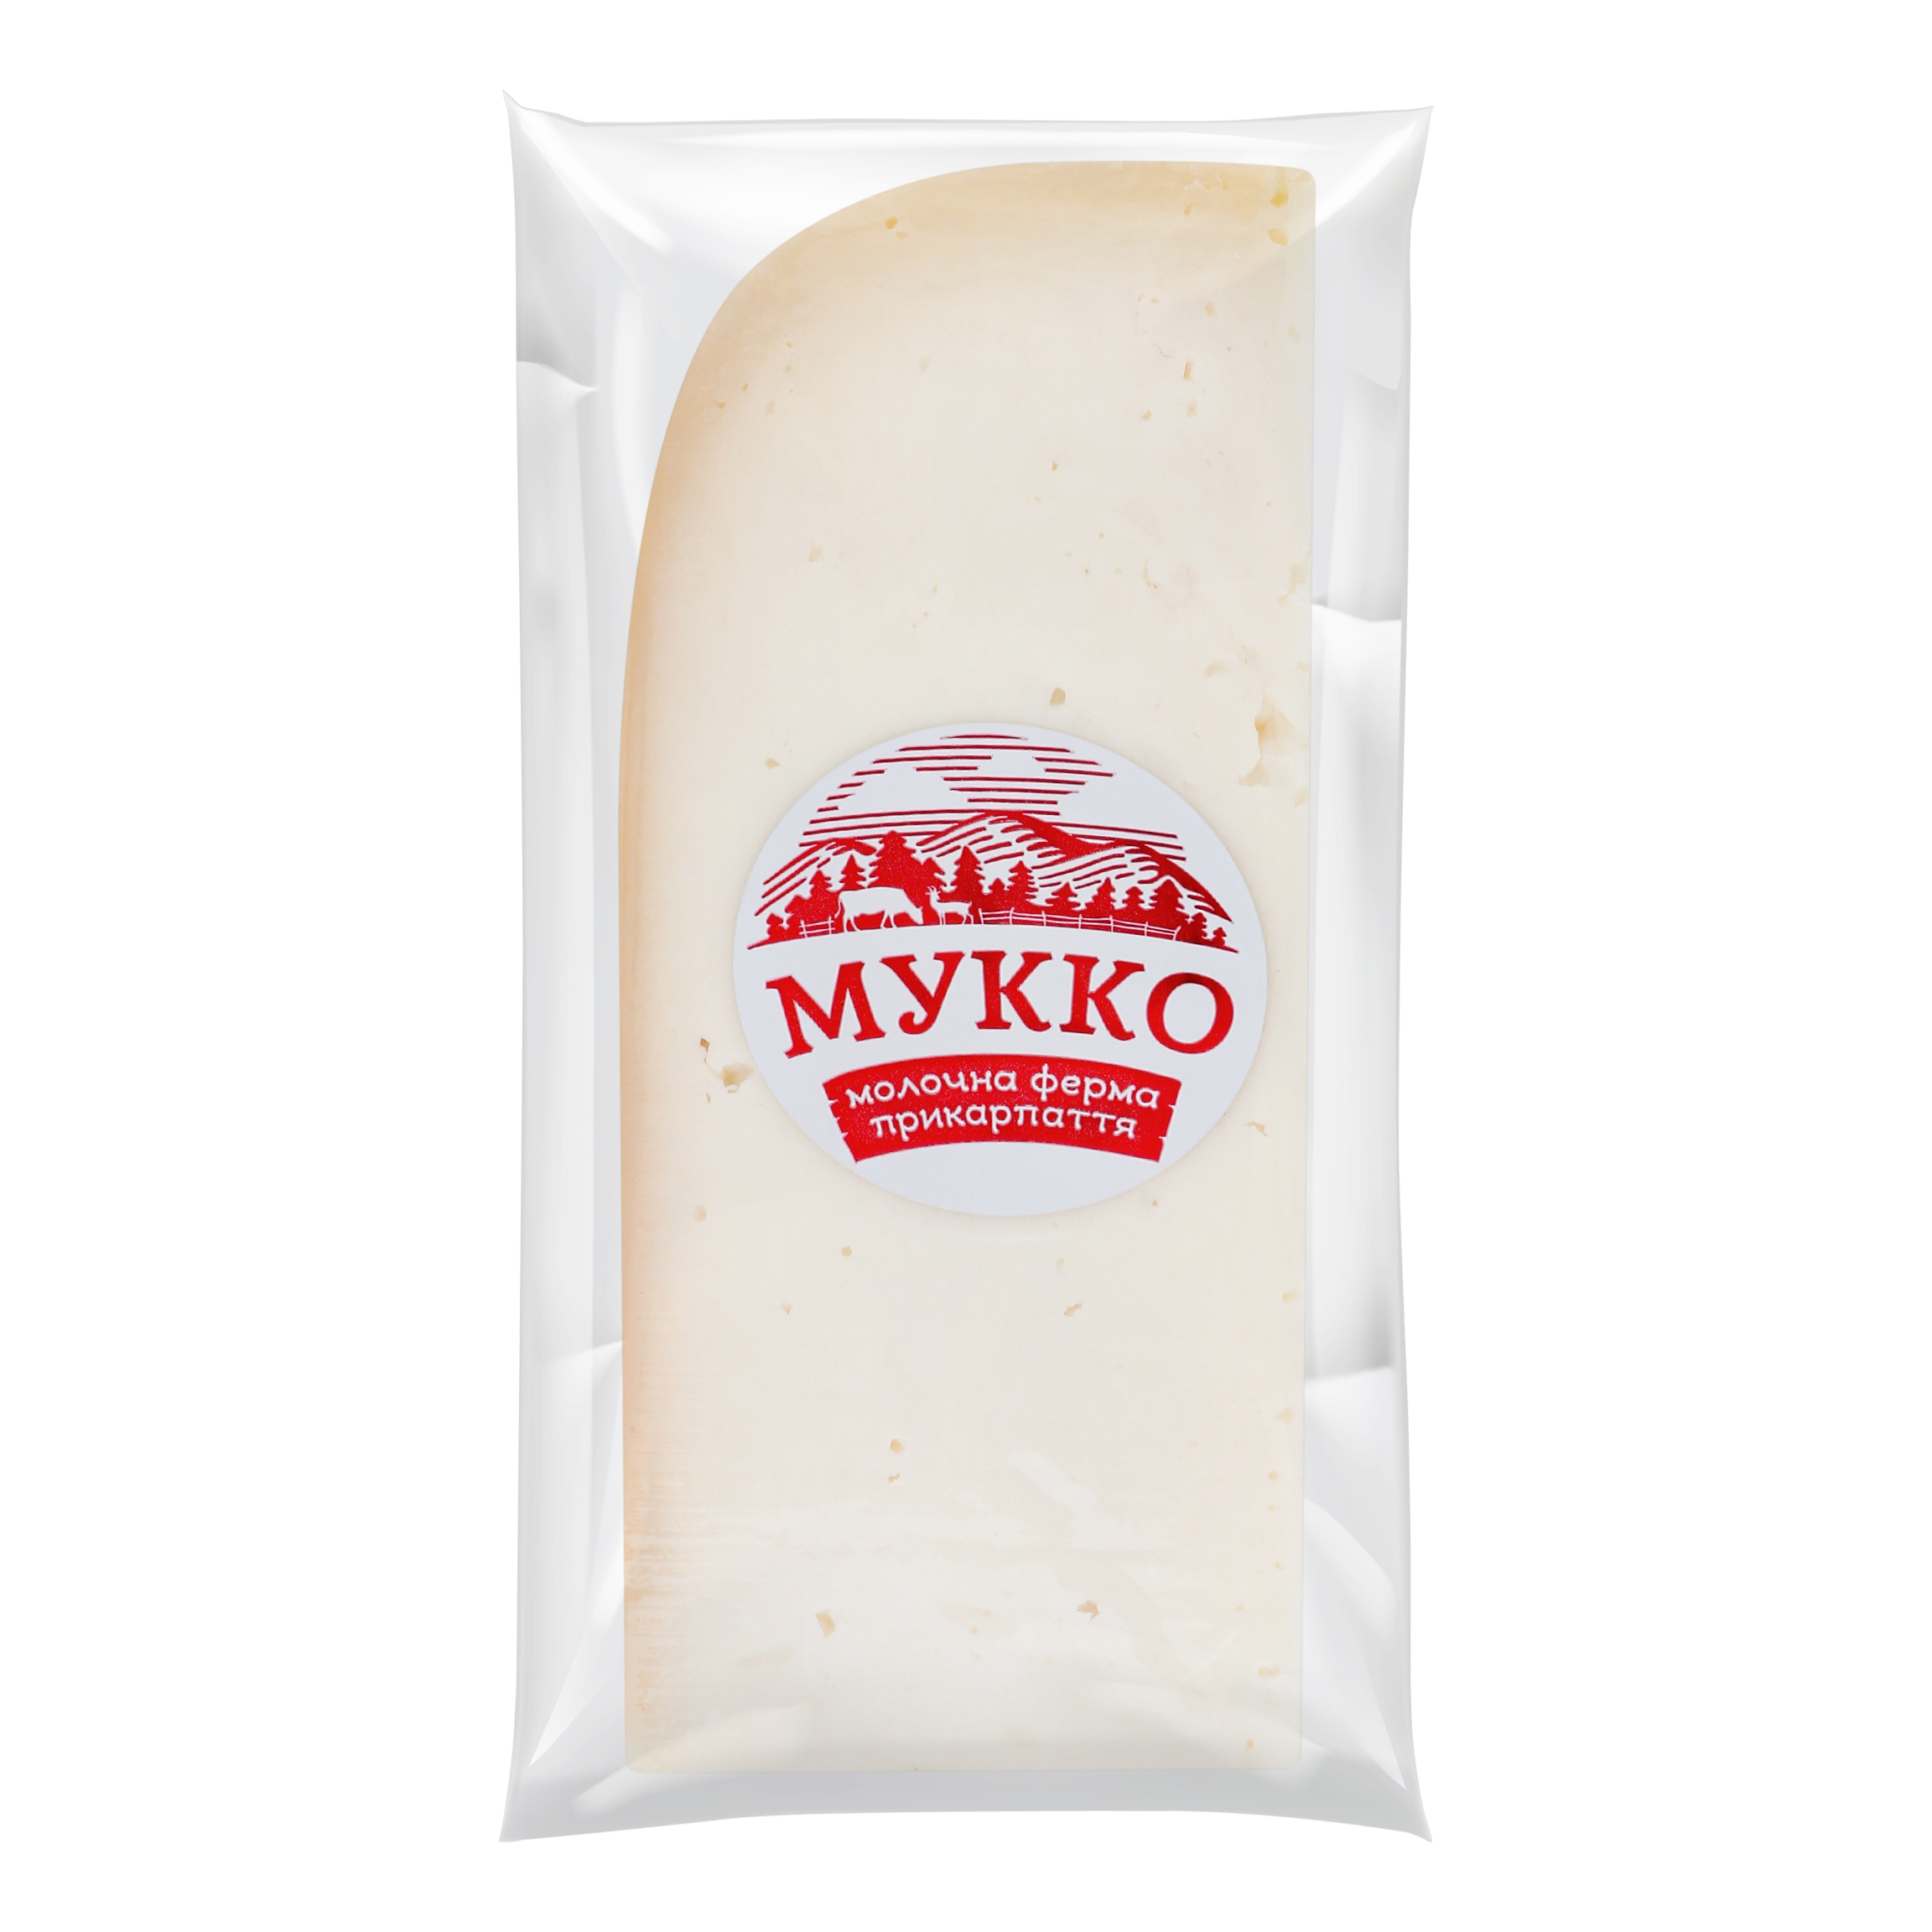 Mukko goat cheese 45.7%